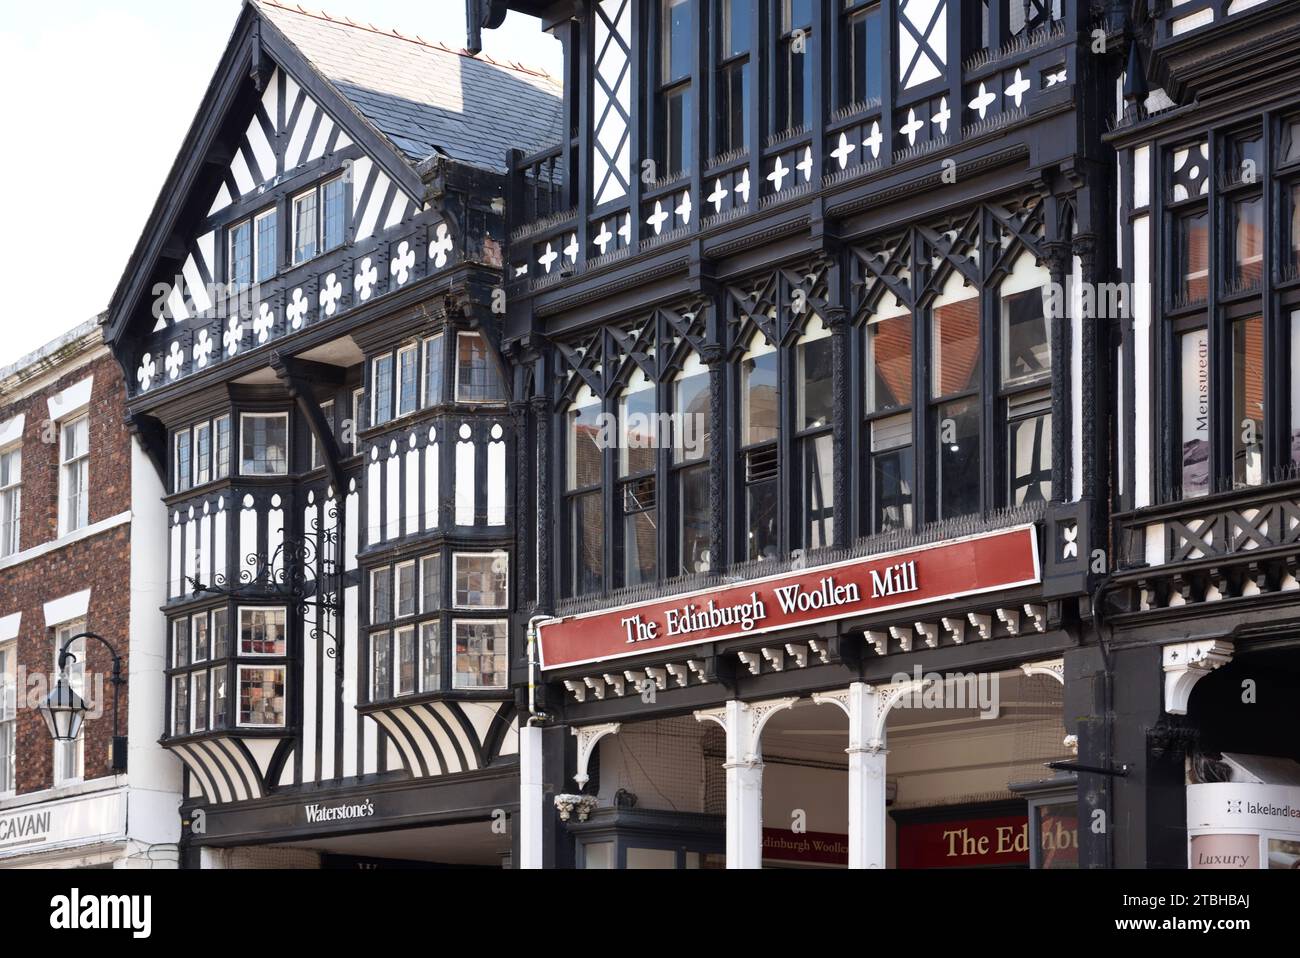 The Rows Eastgate Street, con edifici storici in legno e un negozio di Edinburgh Woollen Mill Shop o Store Chester England UK Foto Stock